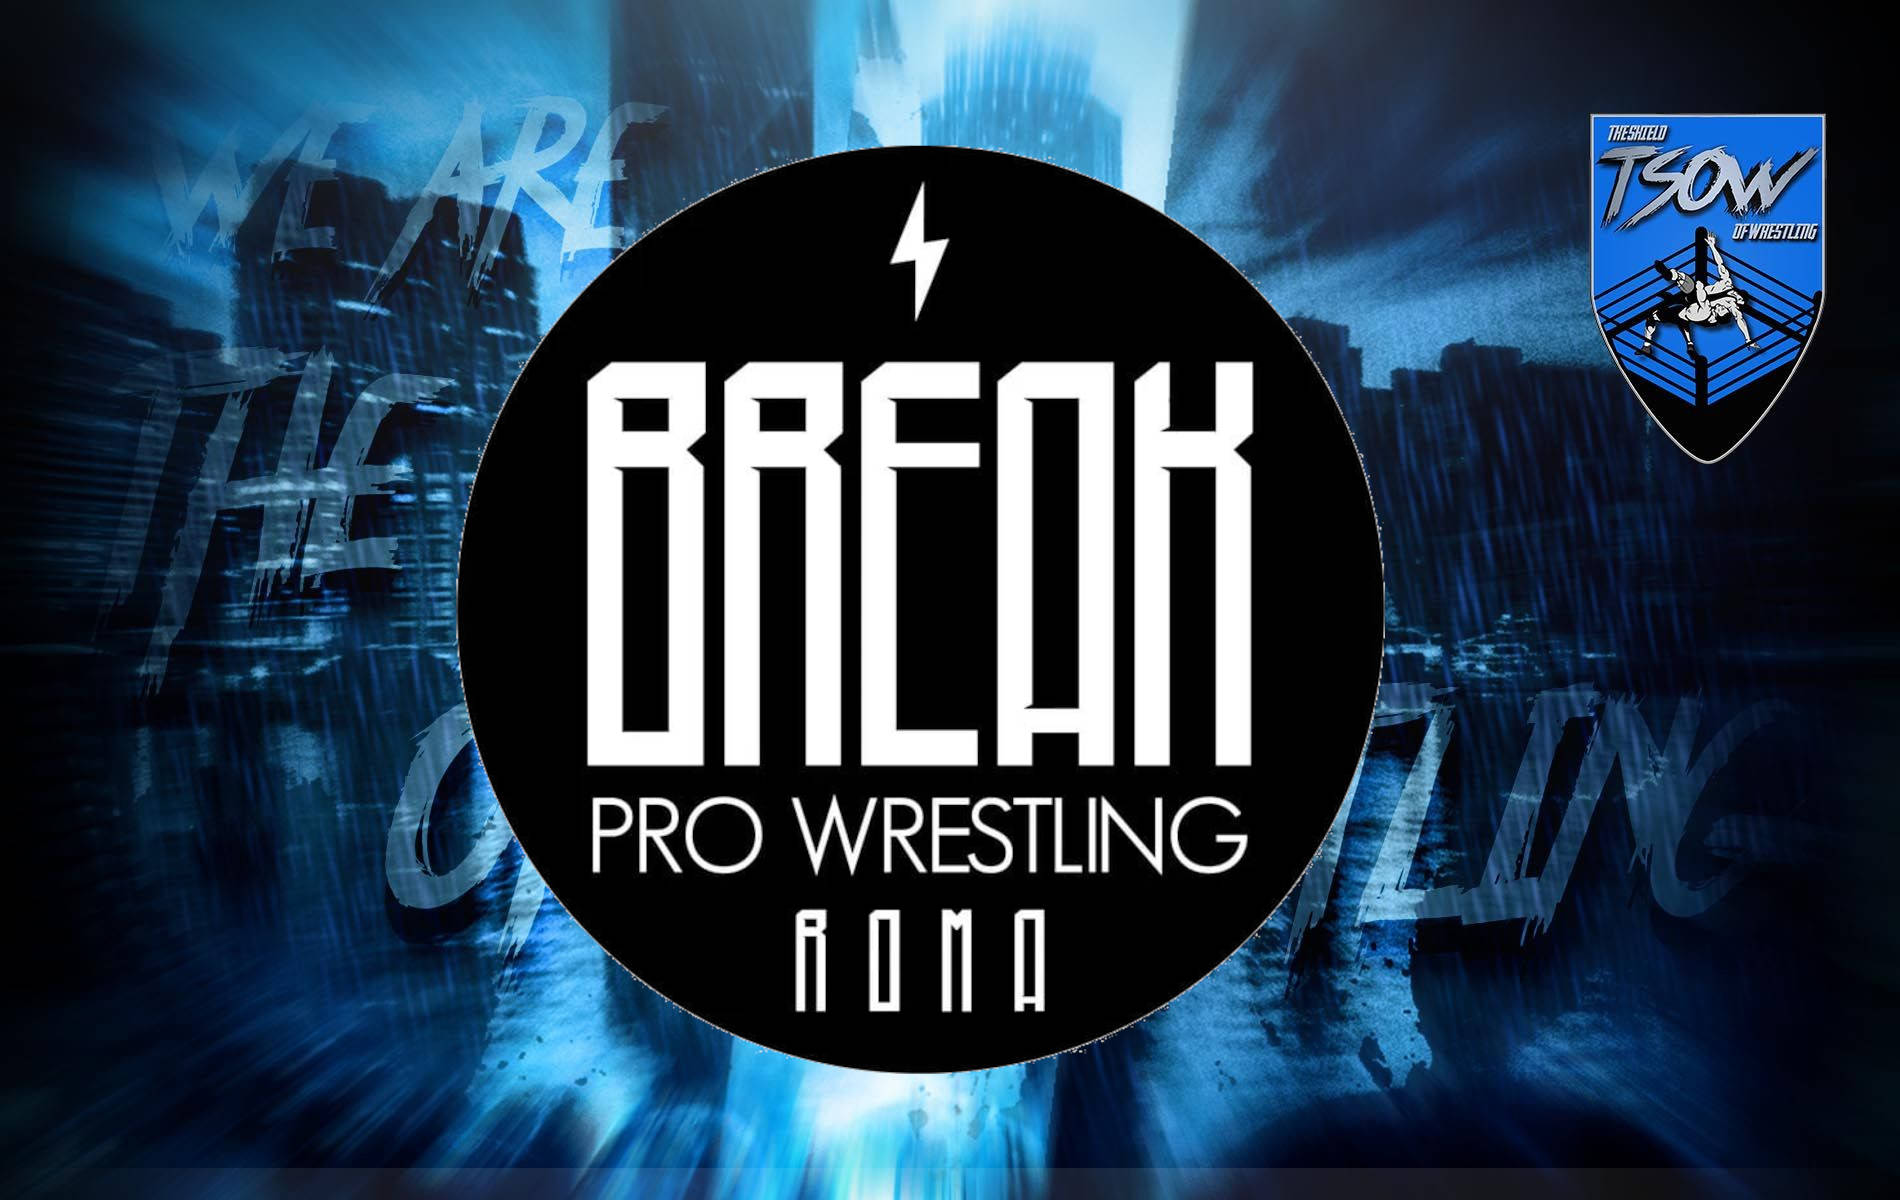 BREAK Pro Wrestling: il nostro intervento al Media Call